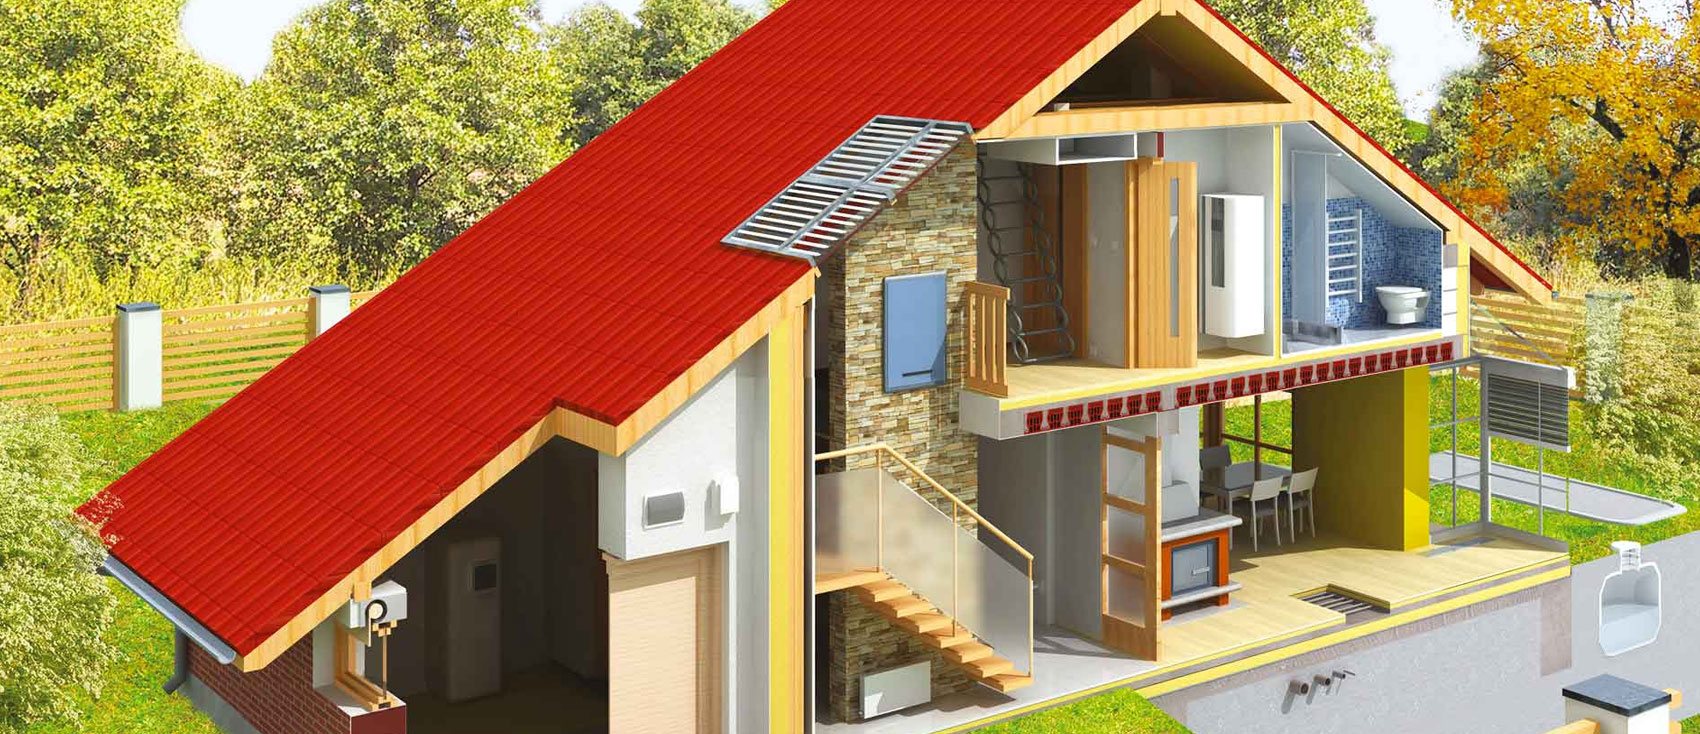 Optimizando el confort y ahorrando energía: el papel vital del aislamiento del tejado